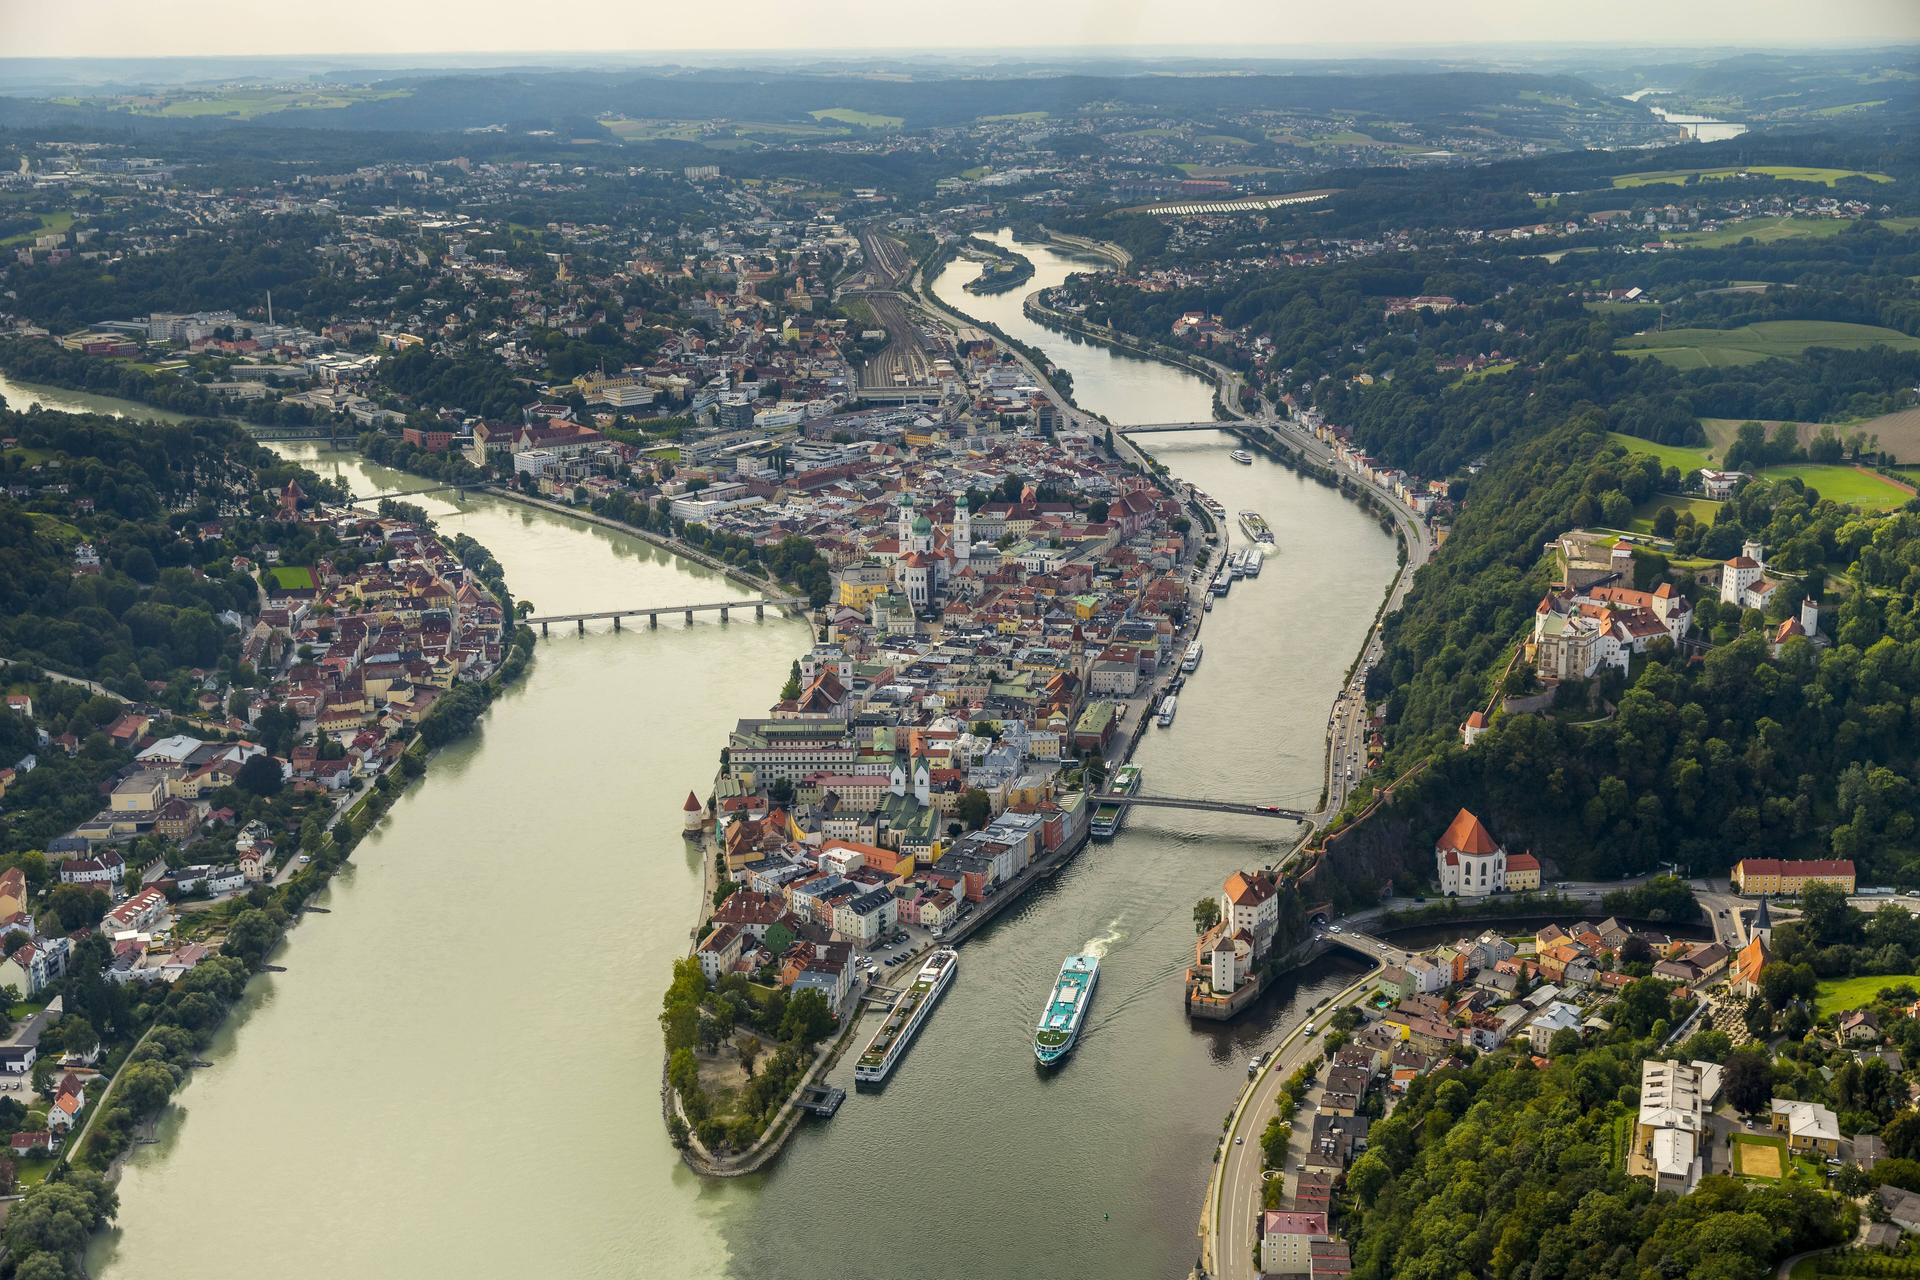 Σχέδιο στα σκαριά για τεχνητό ποτάμι που θα συνδέει Θεσσαλονίκη – Δούναβη